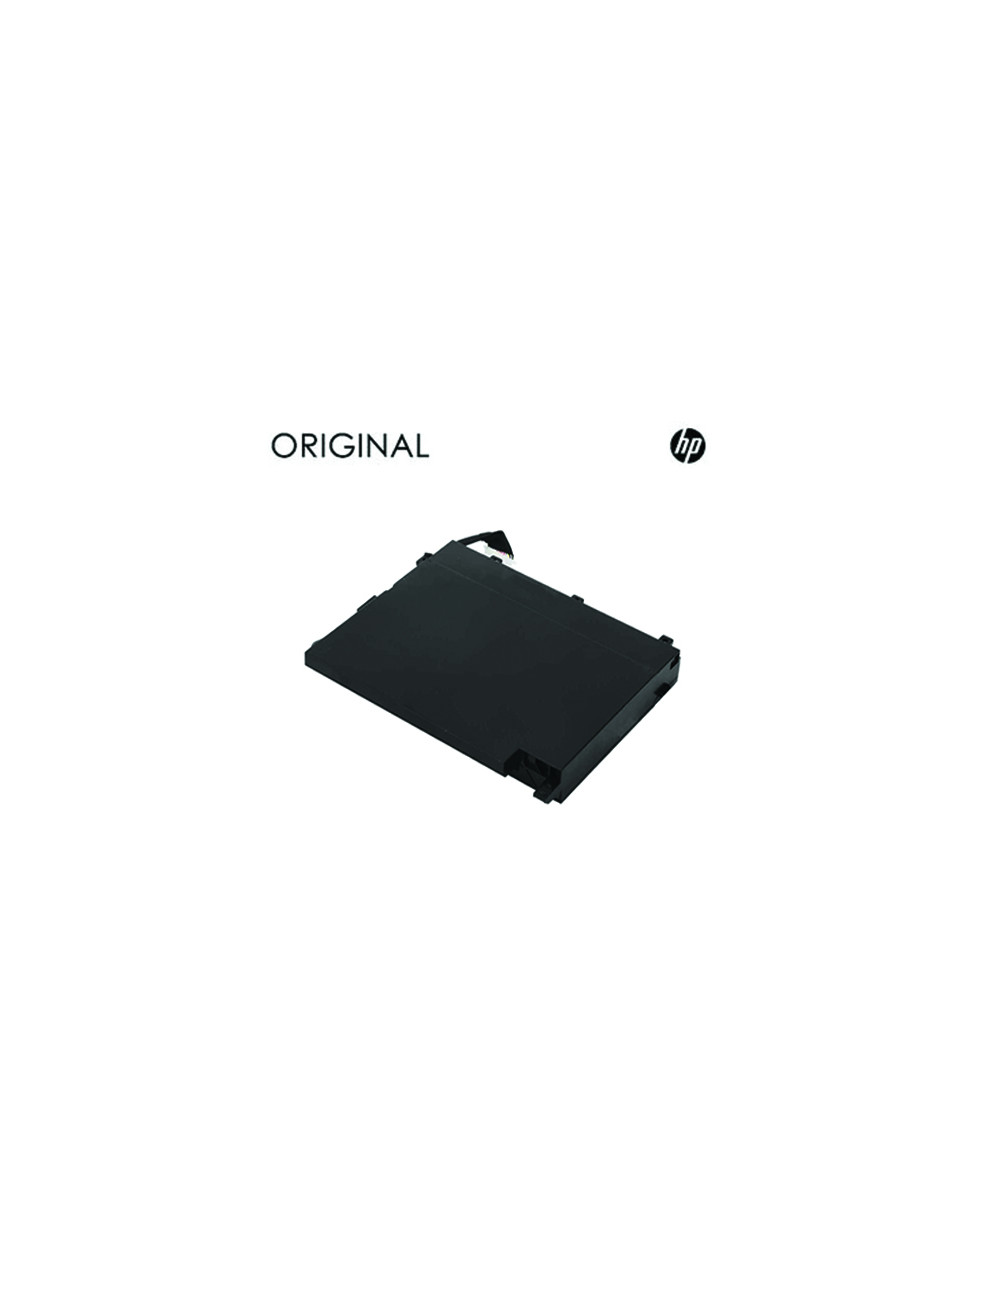 Notebook baterija, HP PF06XL Original